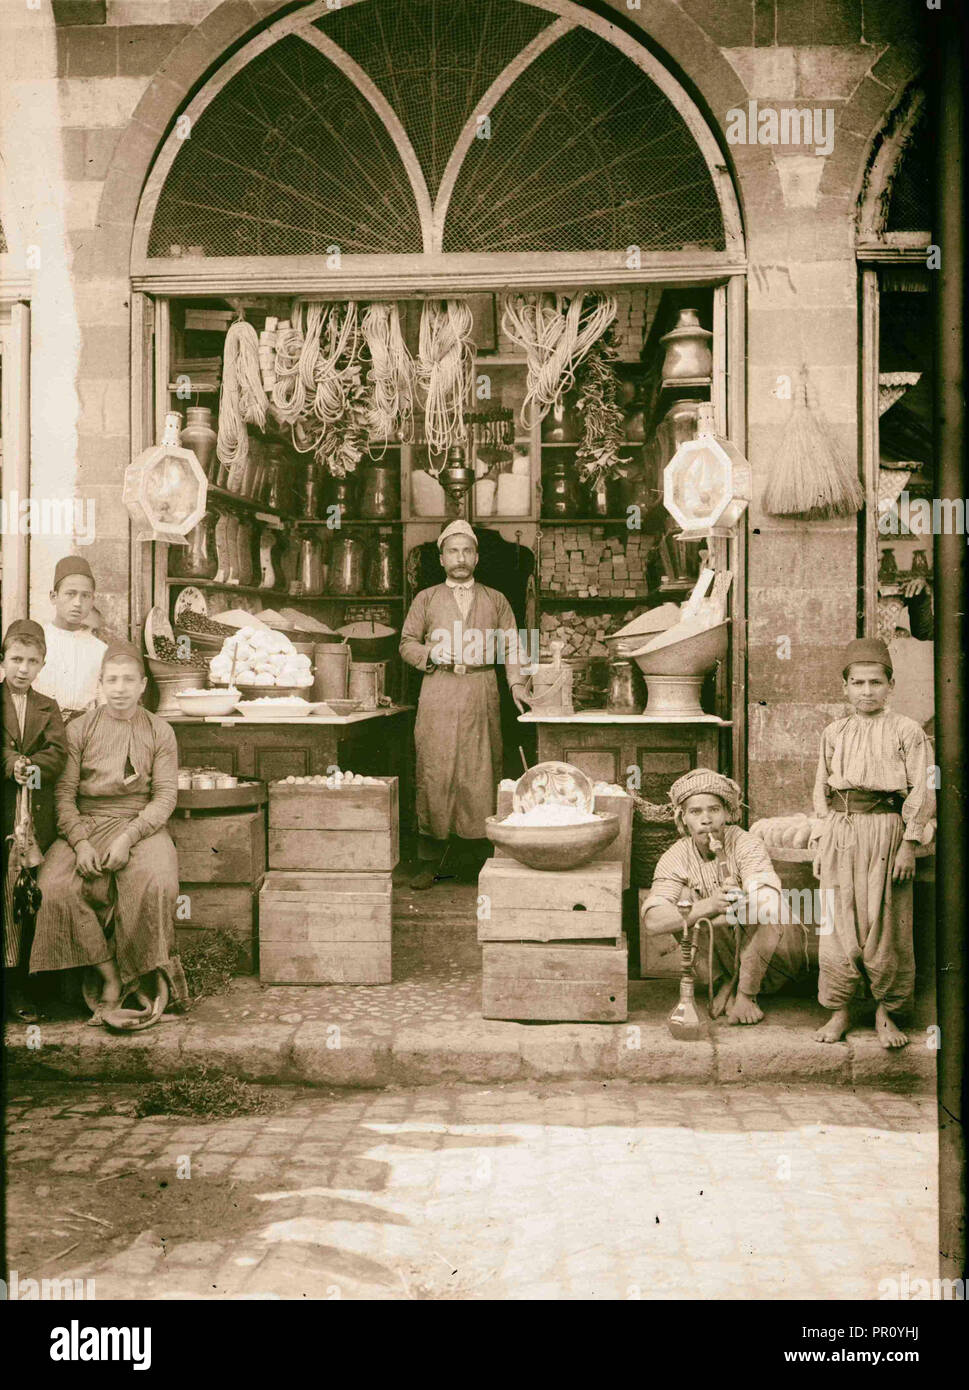 Drogheria 1900 Medio Oriente Foto Stock